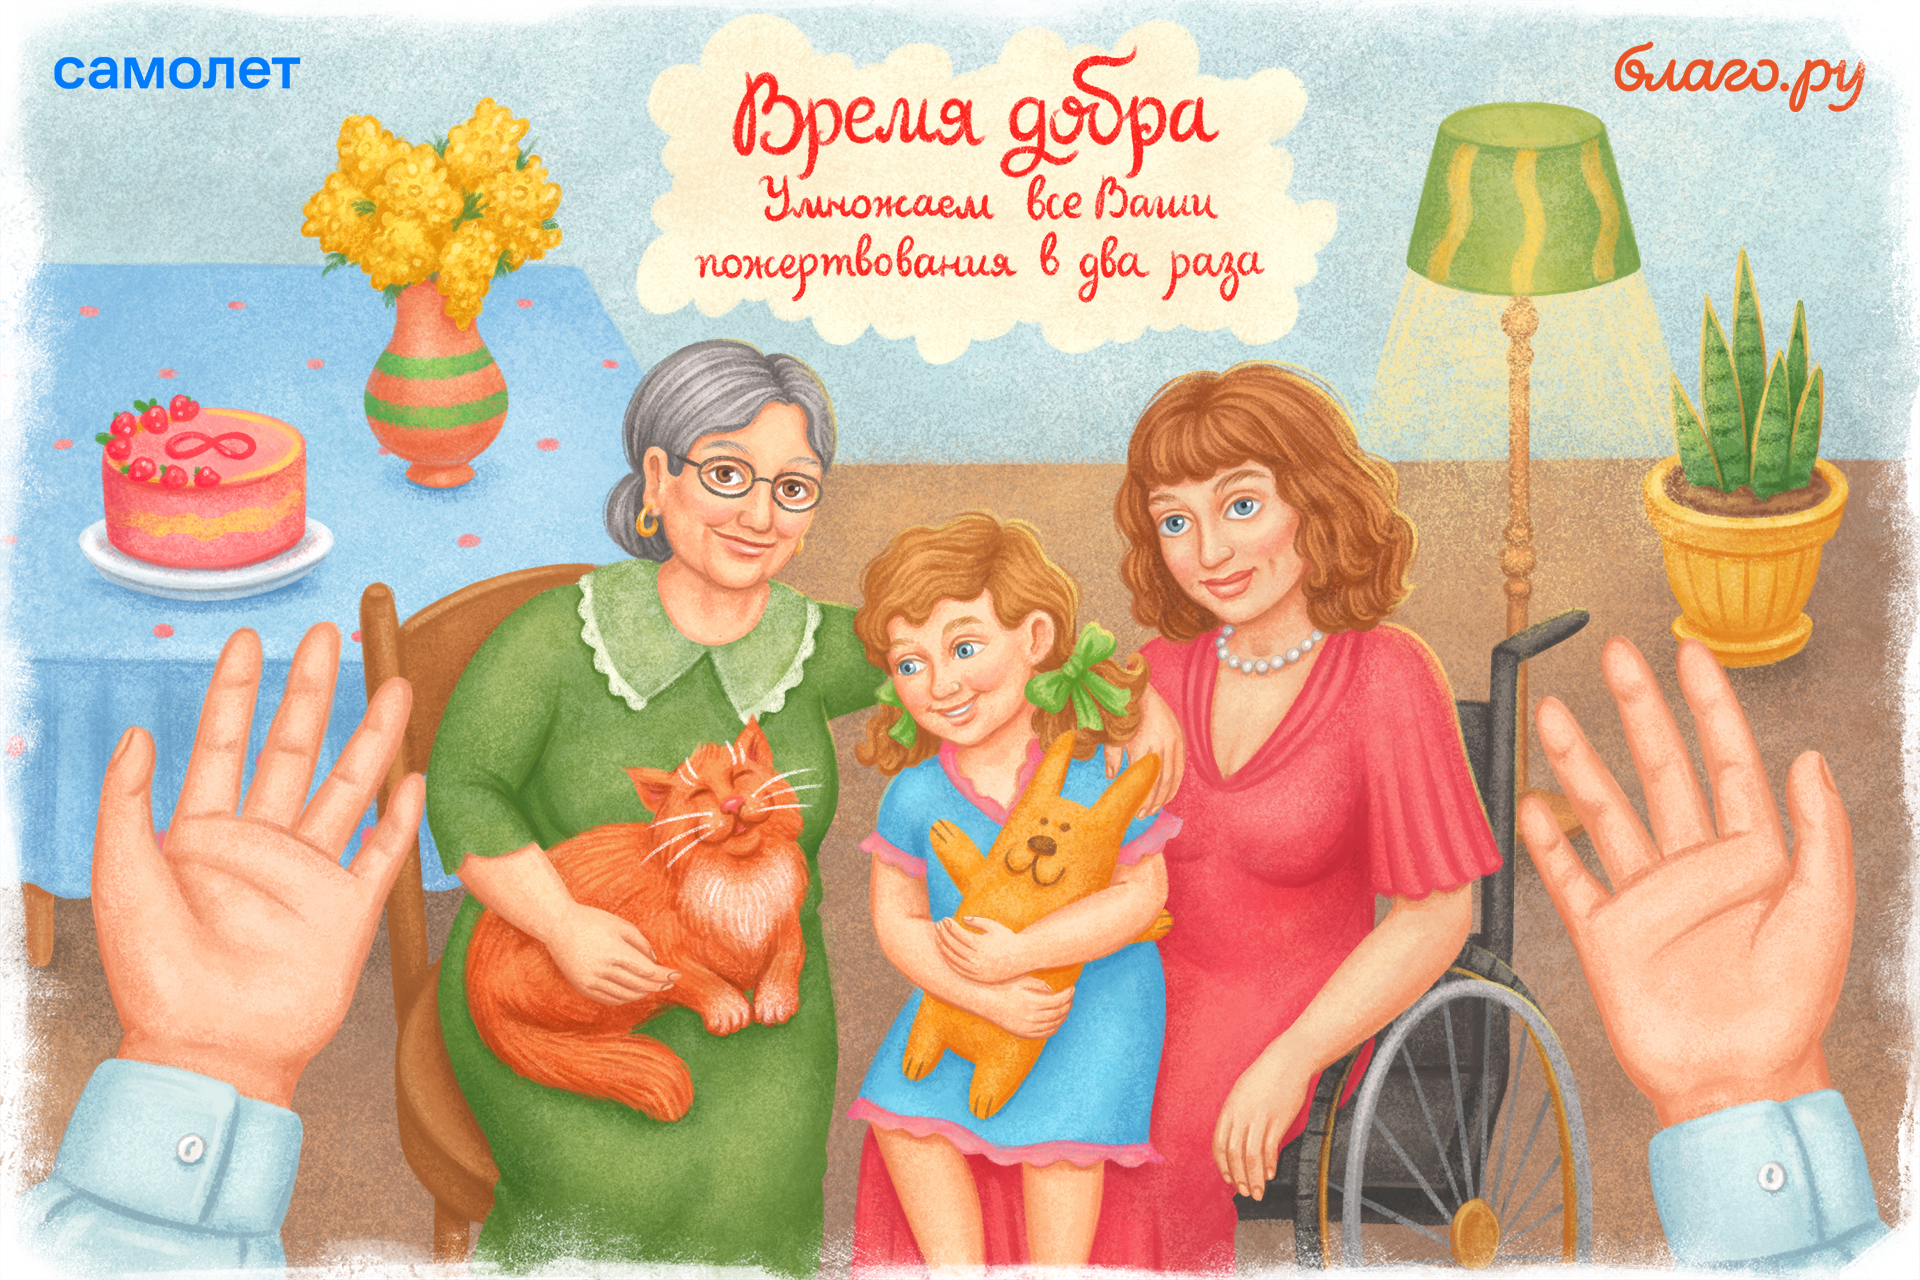 Подробнее о статье Время добра: 1 марта на Благо.ру все пожертвования в пользу фондов, помогающих женщинам, будут удвоены